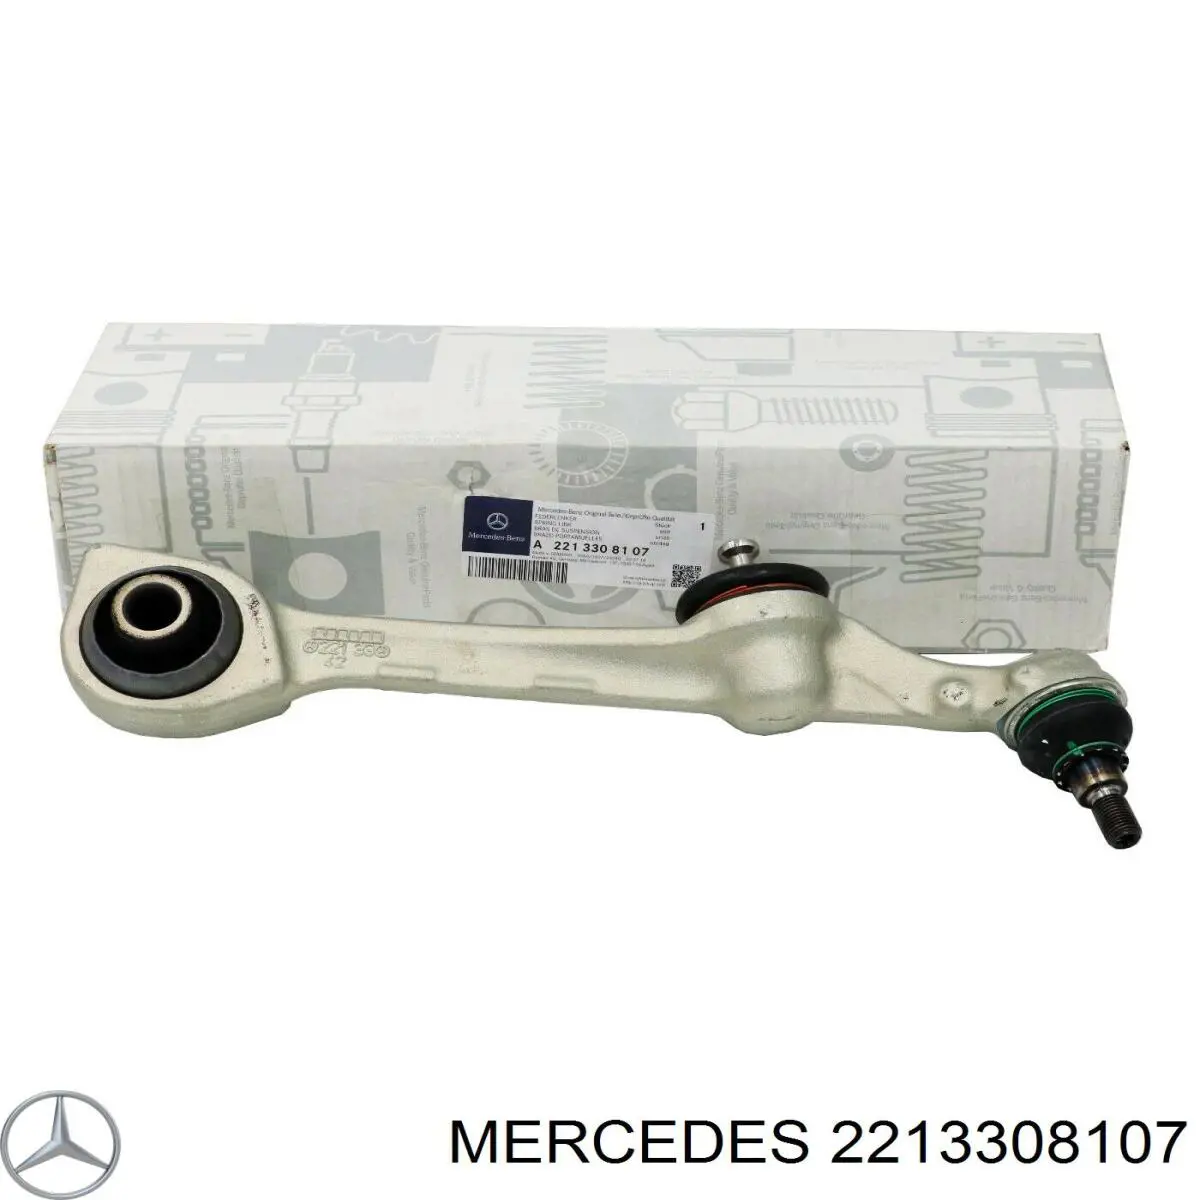 2213308107 Mercedes рычаг передней подвески нижний левый